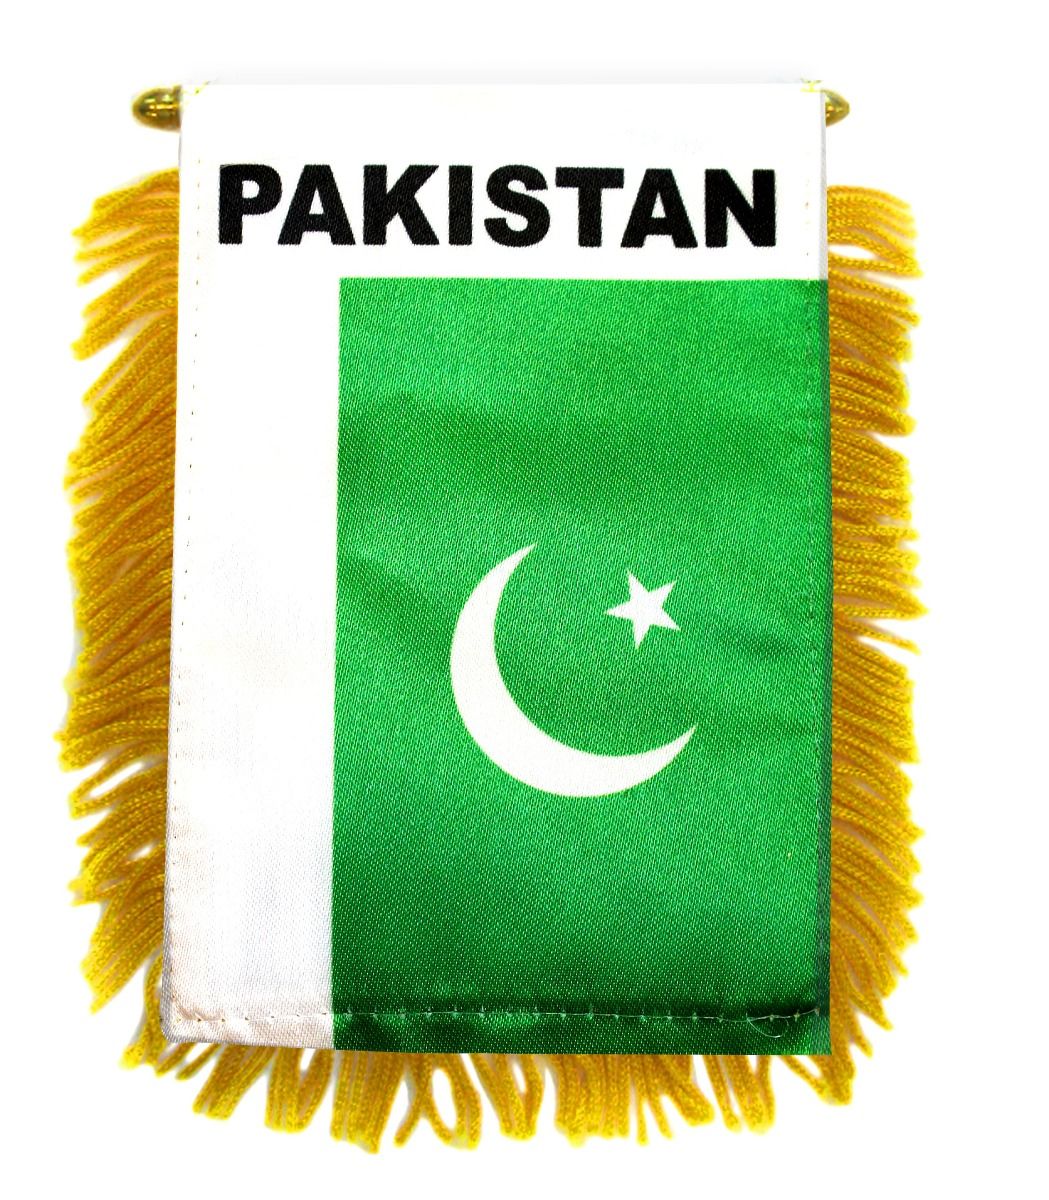 PAKISTAN FLAG MINI BANNER 4"x6" CAR WINDOW MIRROR NEW 